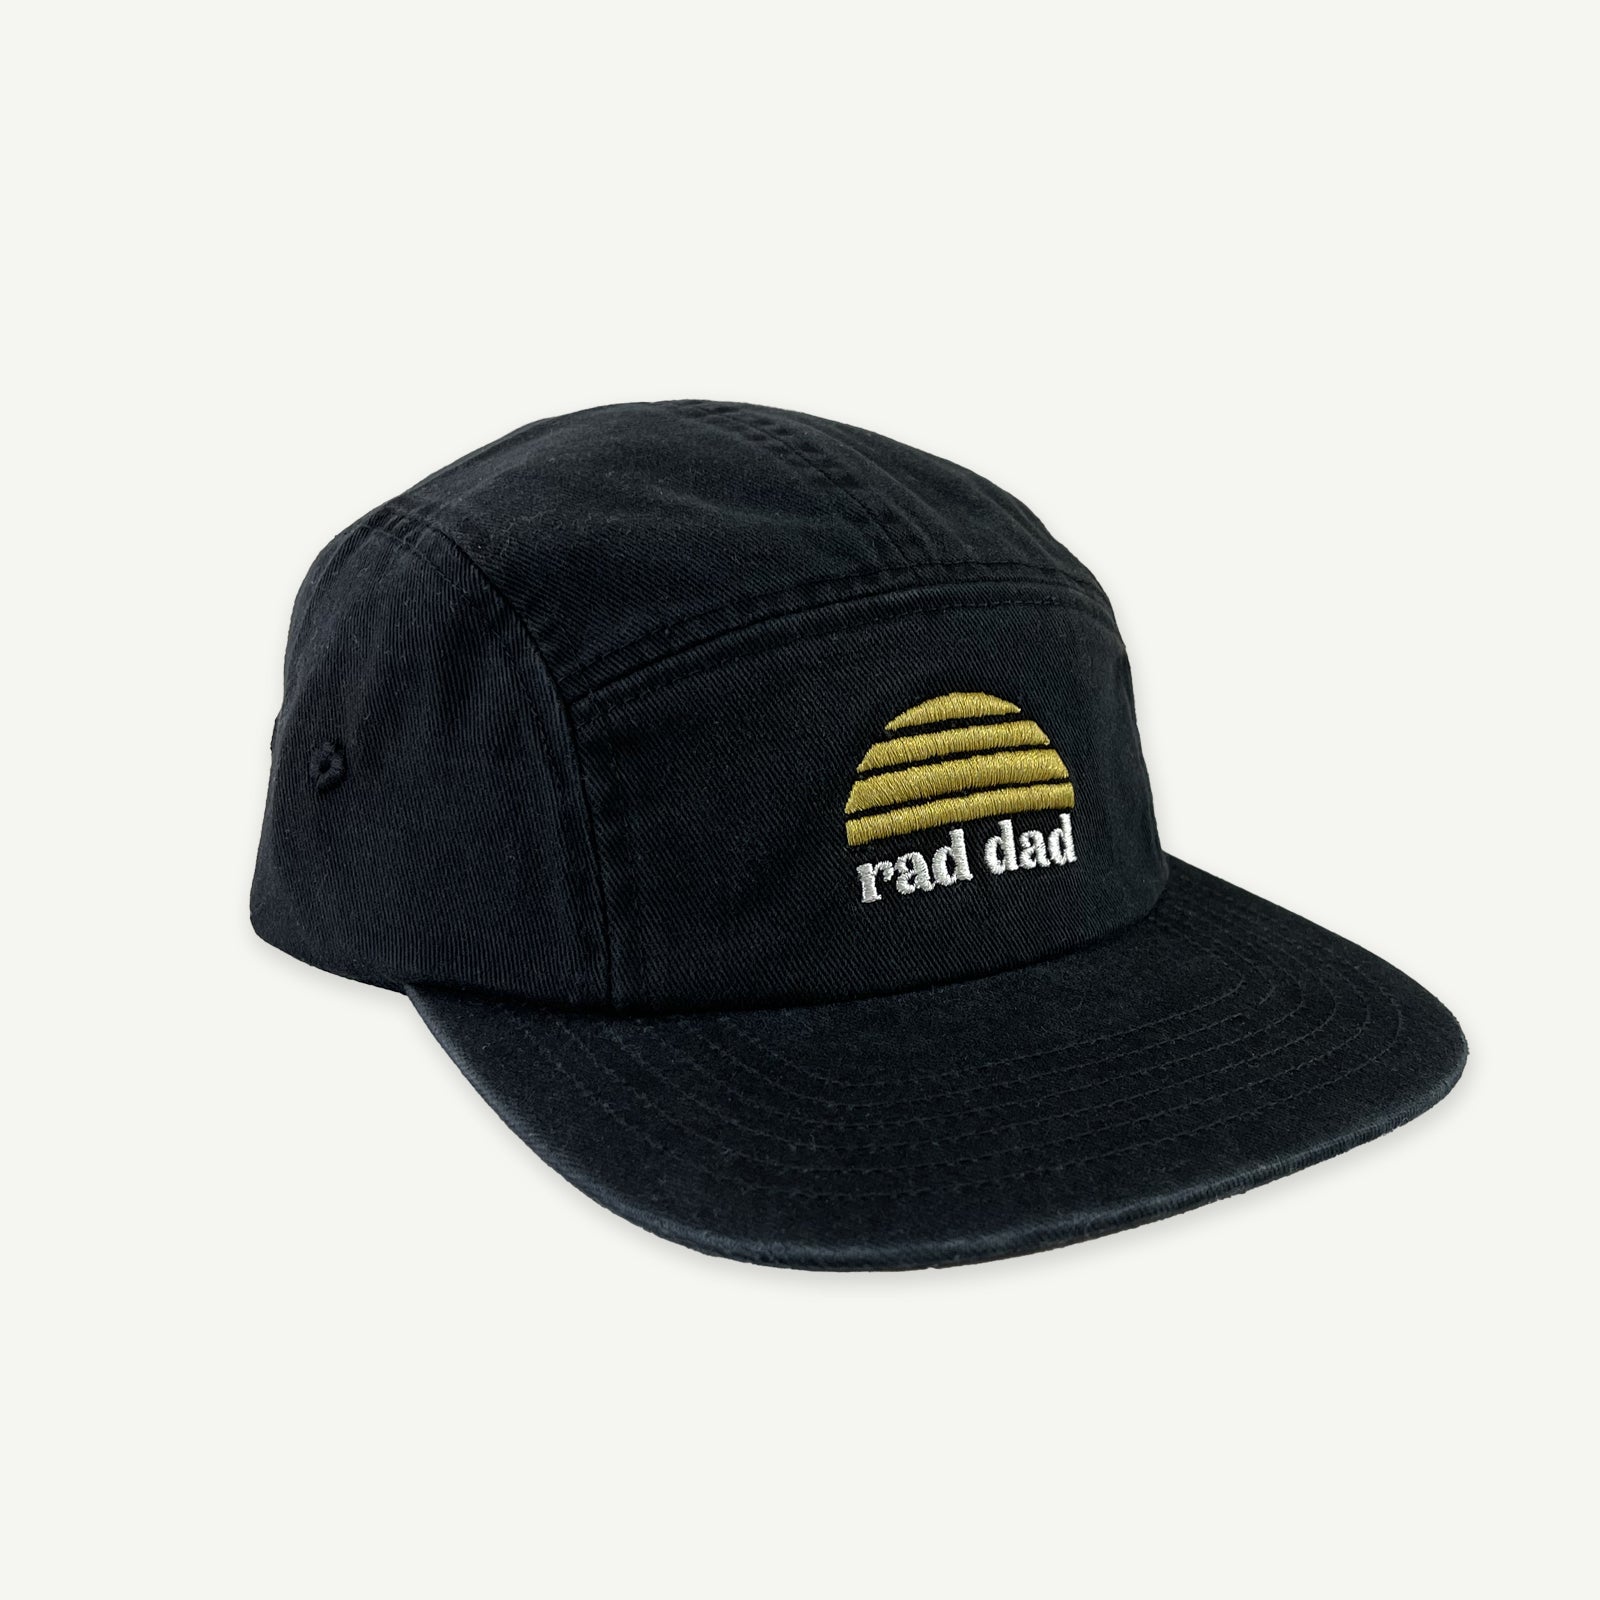 Rad Dad Cap - Washed Black